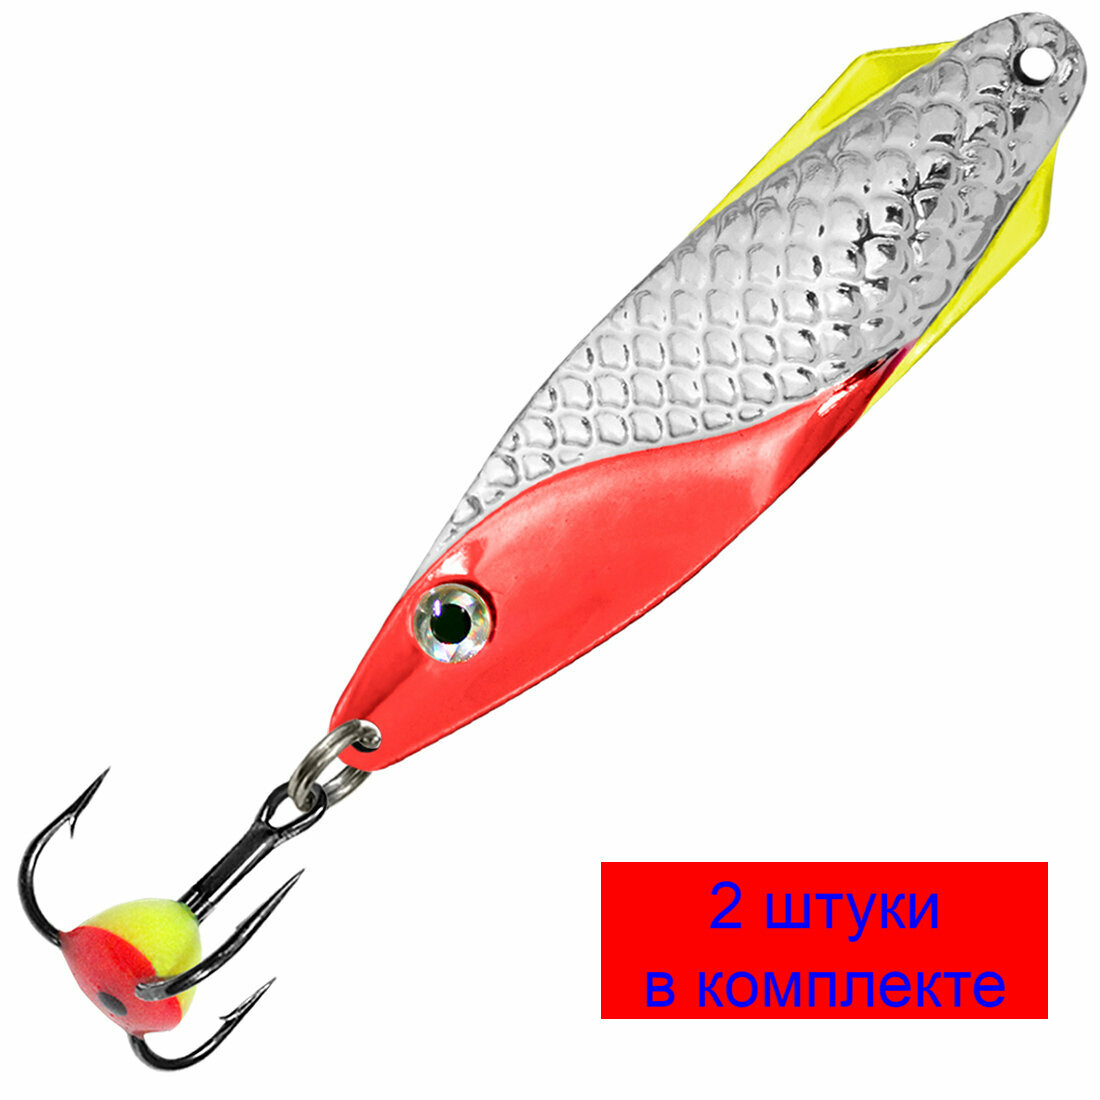 Блесна для рыбалки зимняя AQUA финт 7,5g, цвет 03 (серебро, красный металлик) 2 штуки в комплекте.